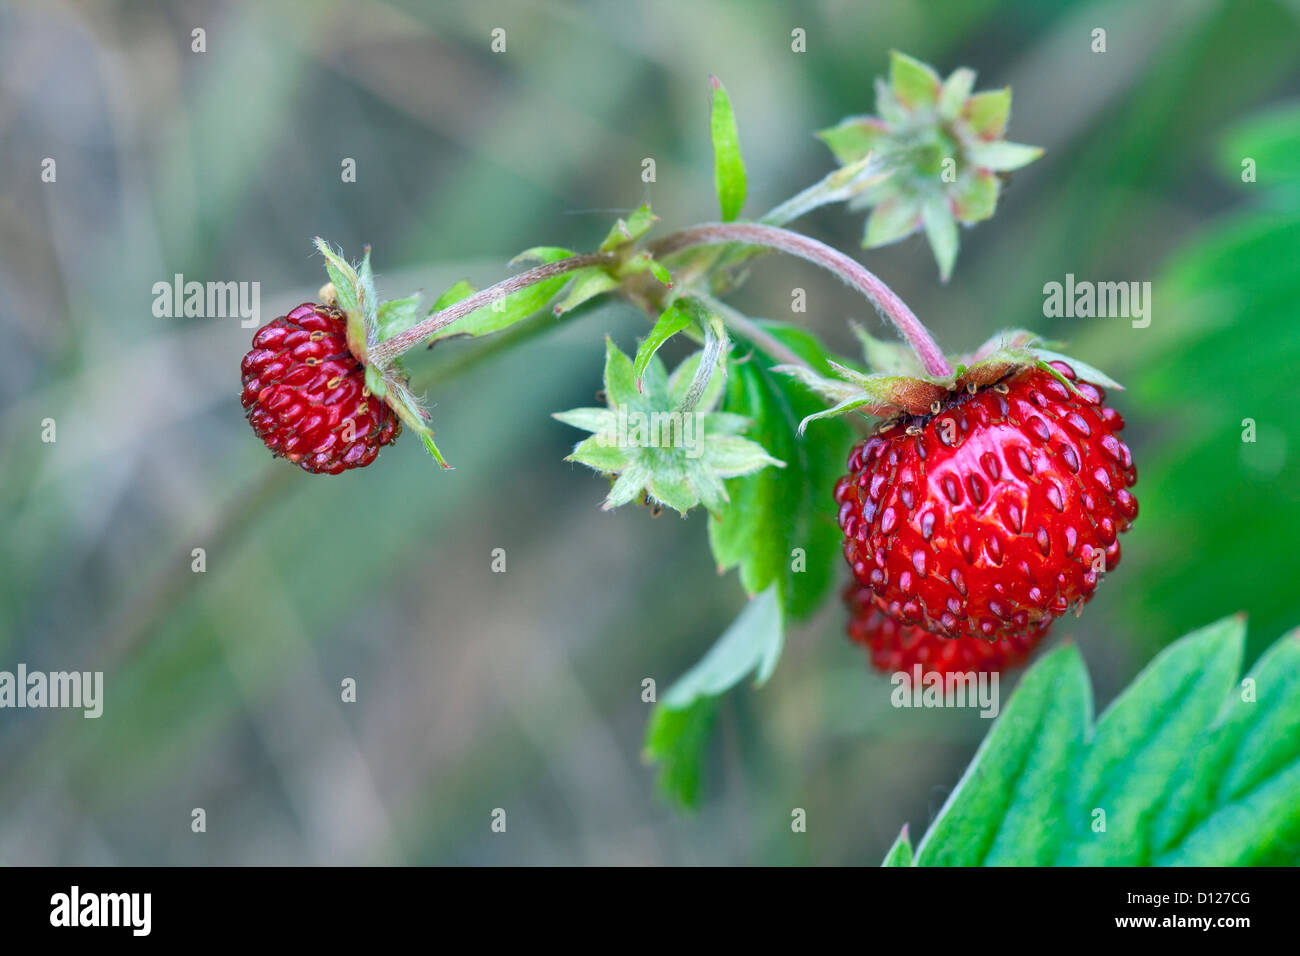 European wood wild strawberry, Fragaria vesca Stock Photo